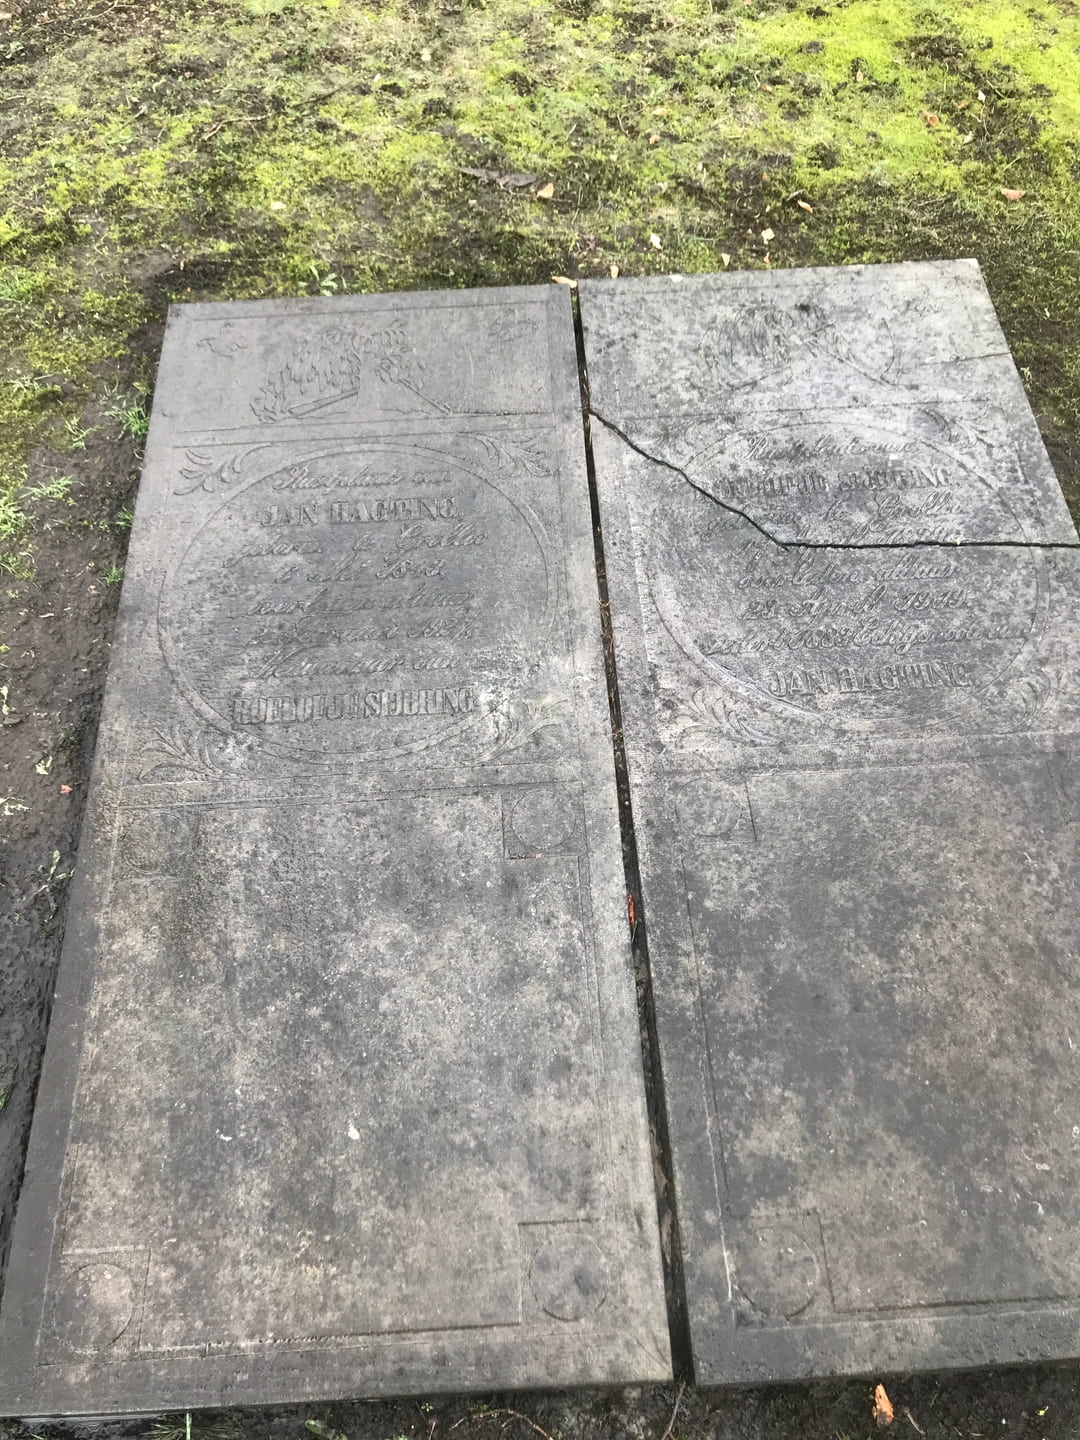 Hieronder links zien we de grafsteen van Jan Hagting